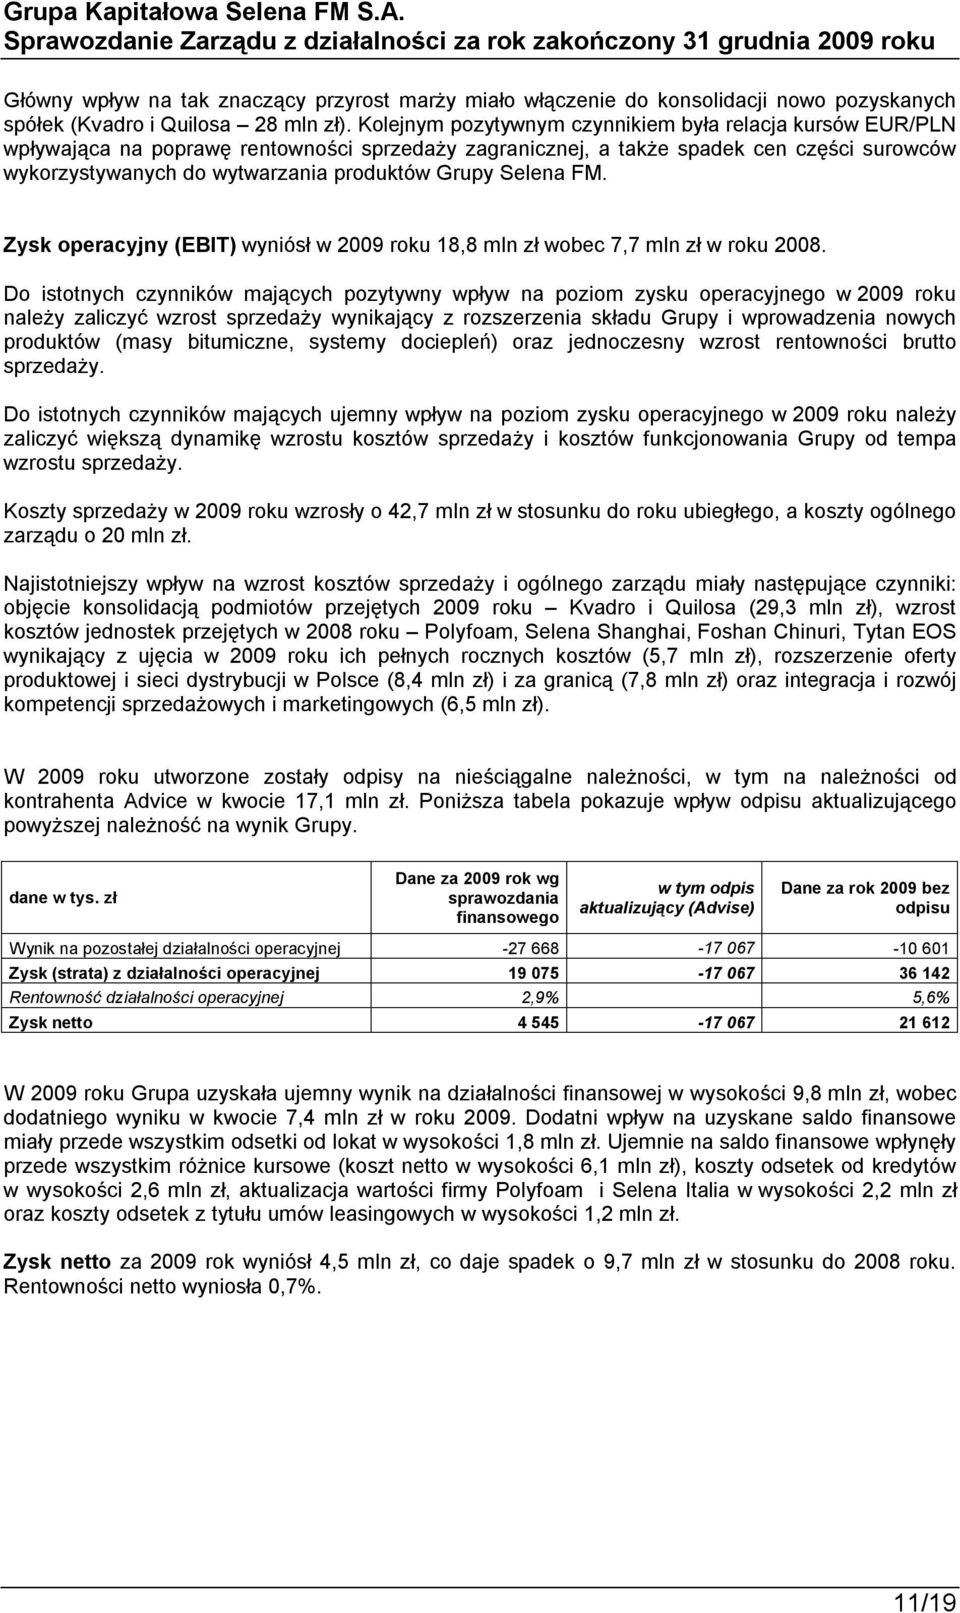 Selena FM. Zysk operacyjny (EBIT) wyniósł w 2009 roku 18,8 mln zł wobec 7,7 mln zł w roku 2008.